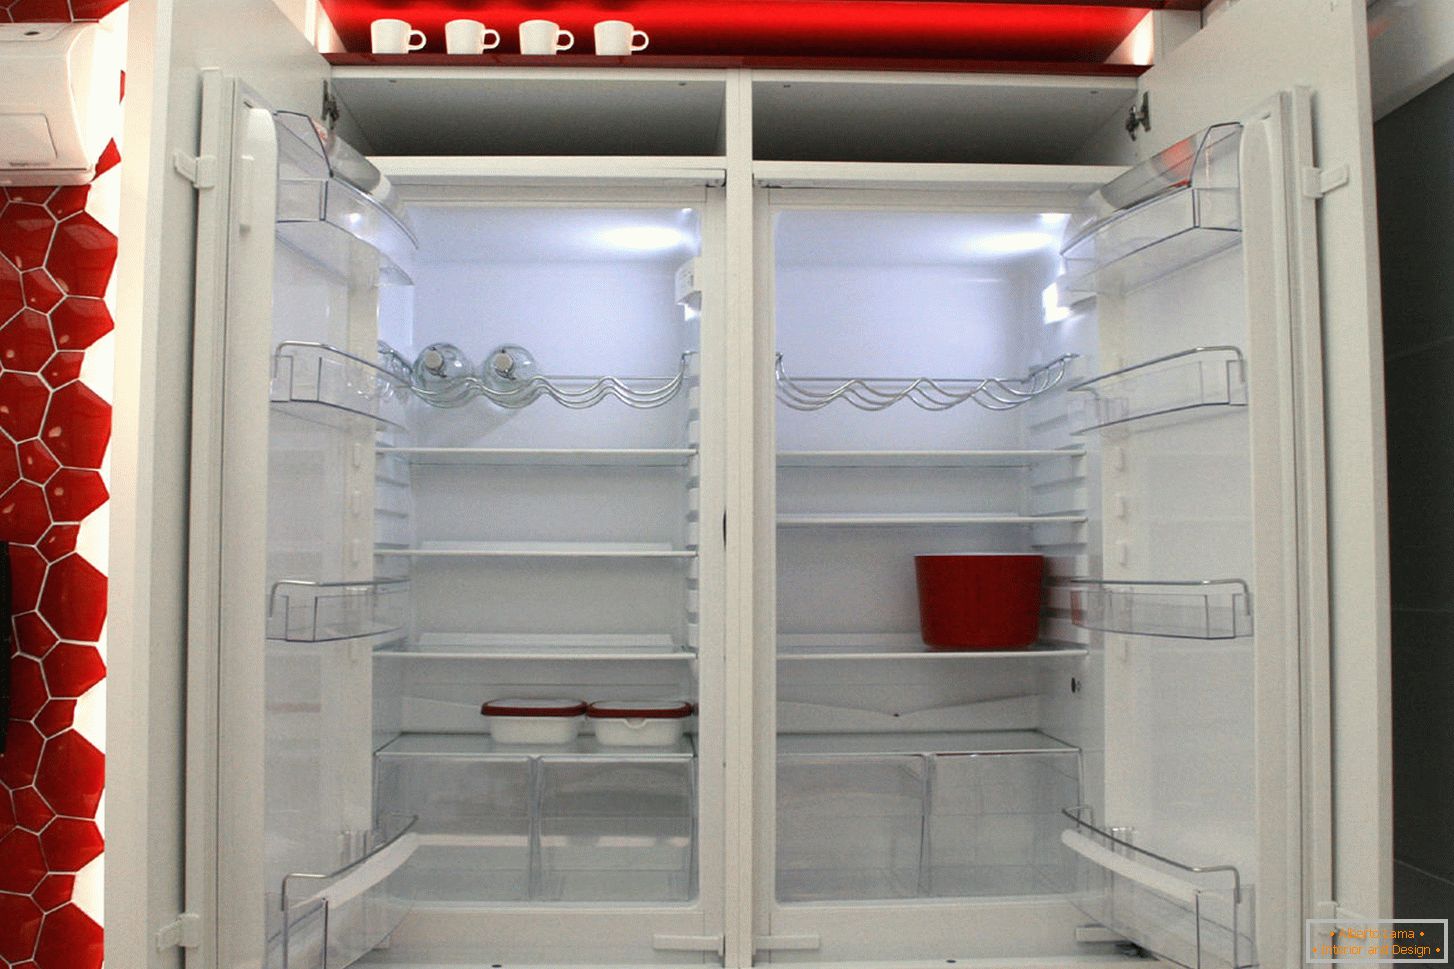 Refrigerador moderno en el interior de la cocina